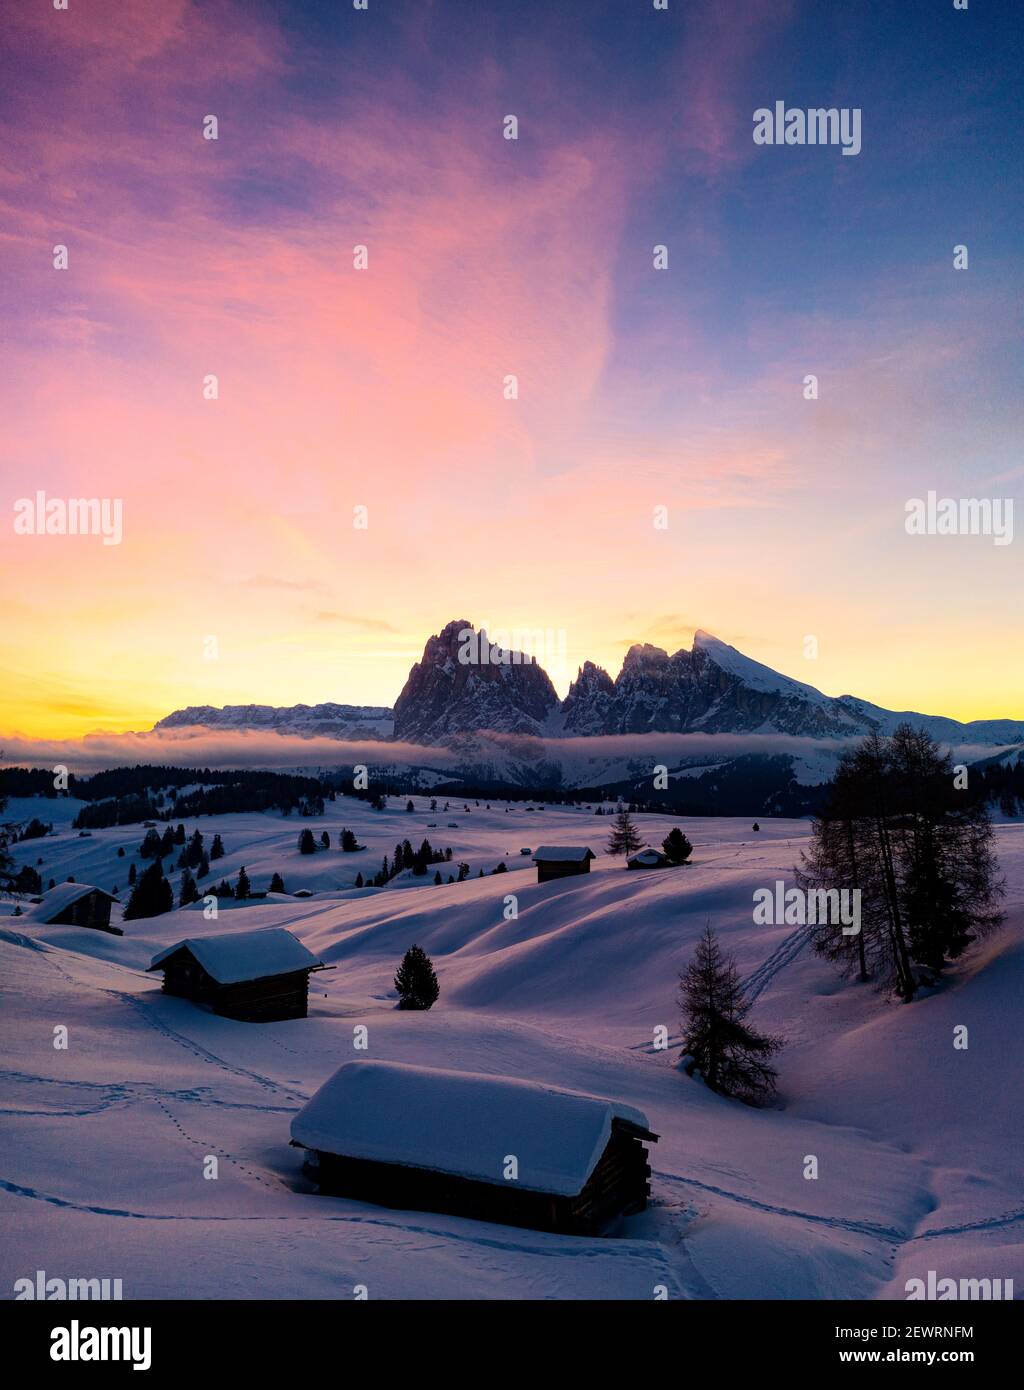 Huttes de montagne couvertes de neige à l'aube avec Sassopiatto et Sassolungo en arrière-plan, Siser Alm, Dolomites, Tyrol du Sud, Italie, Europe Banque D'Images